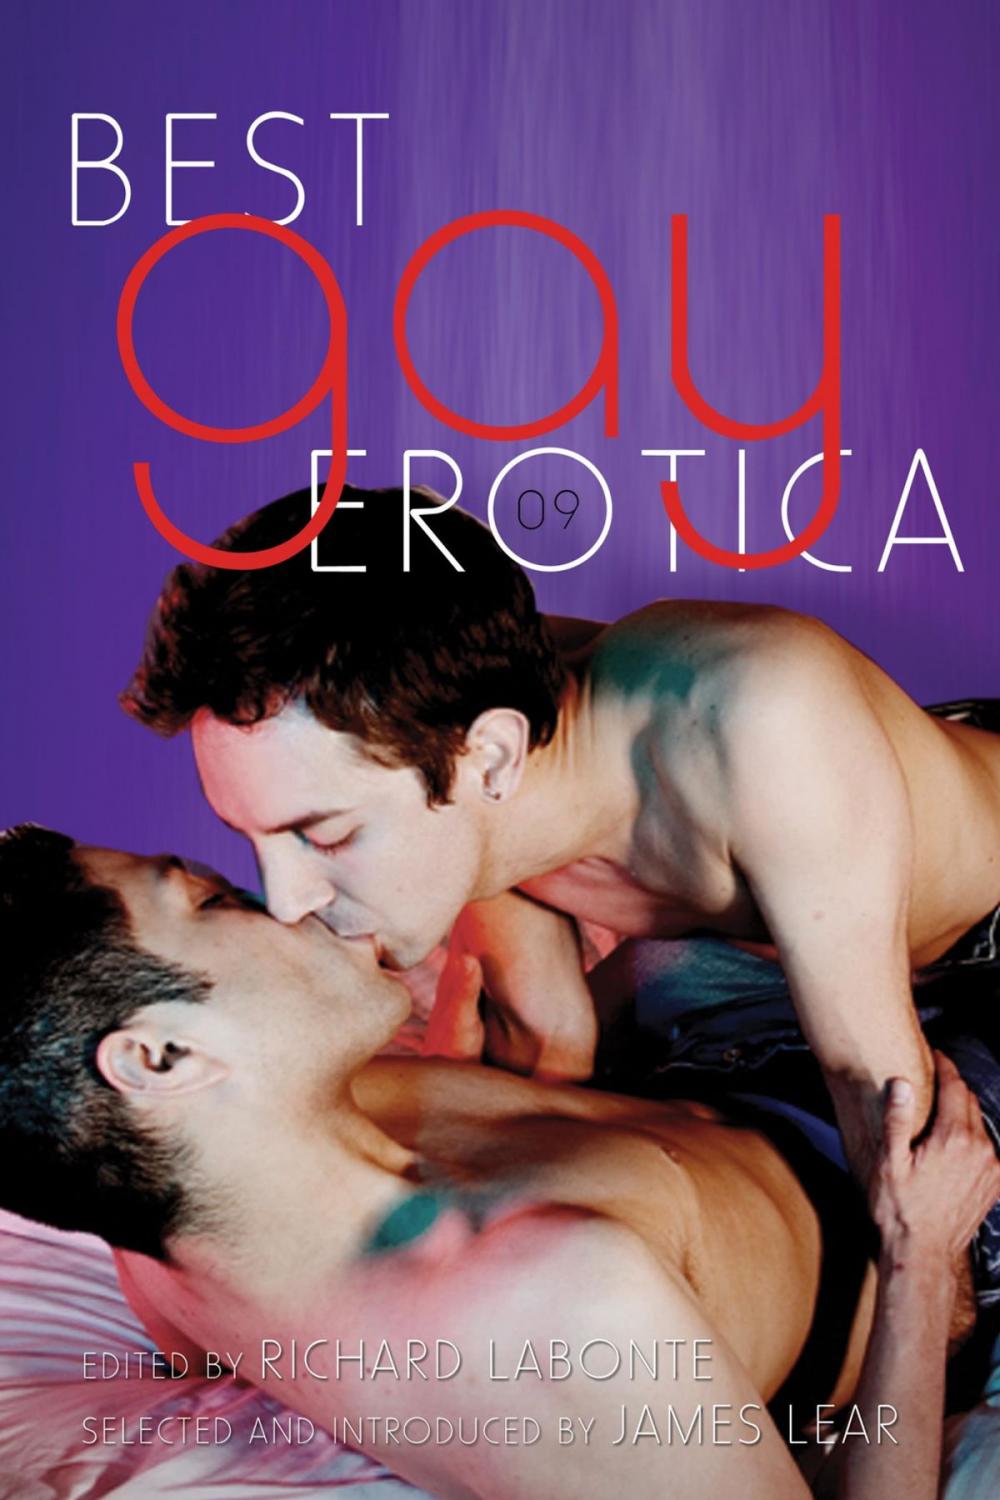 Big bigCover of Best Gay Erotica 2009